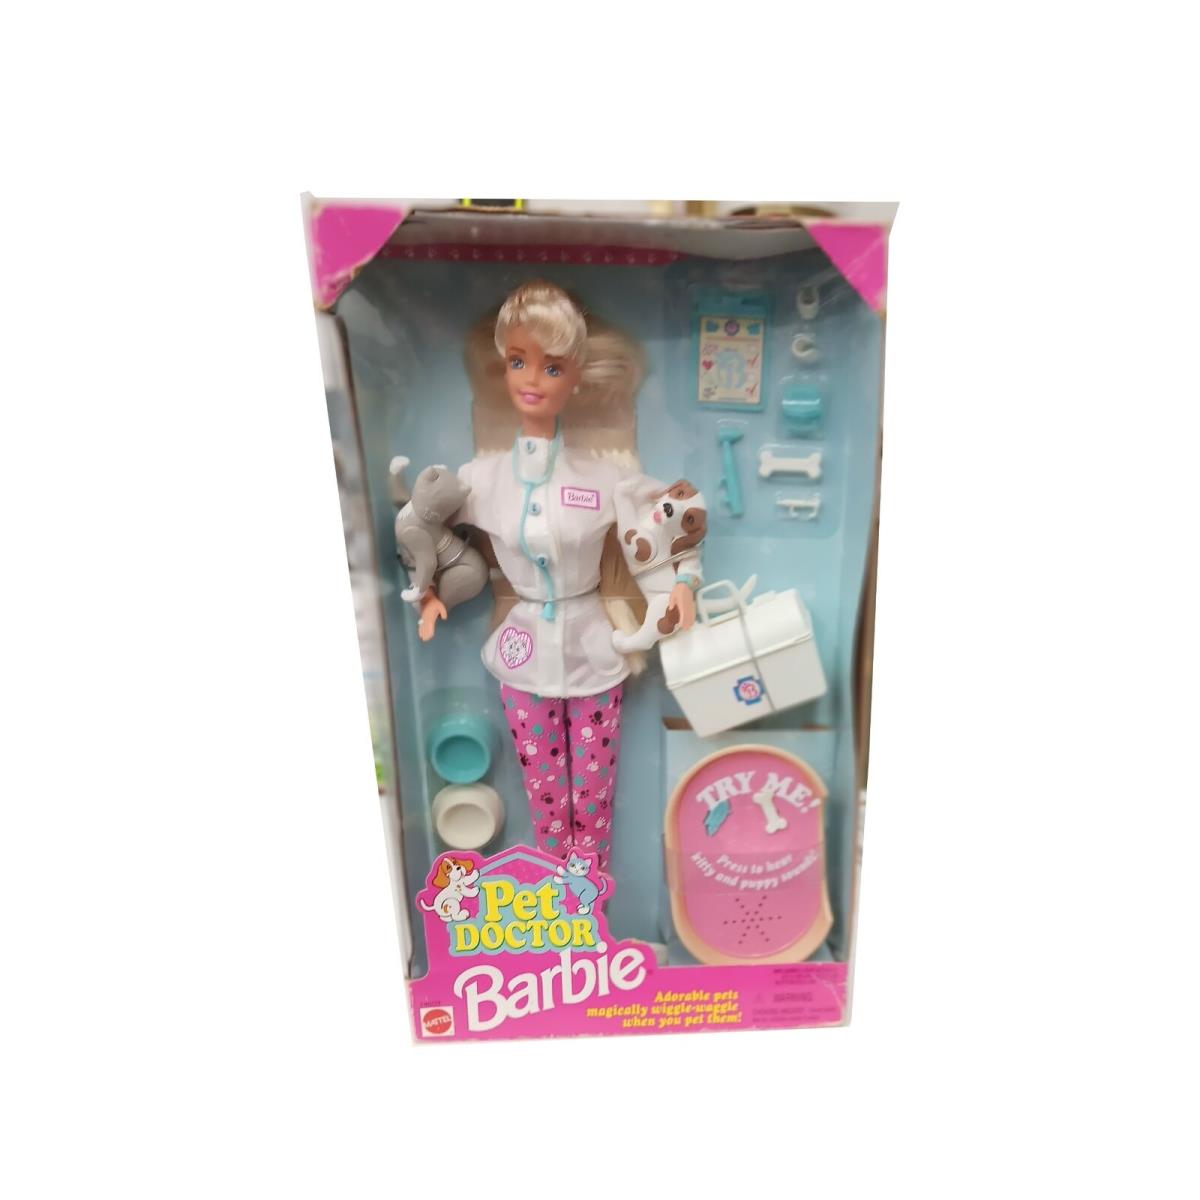 Barbie Pet Doctor 1996